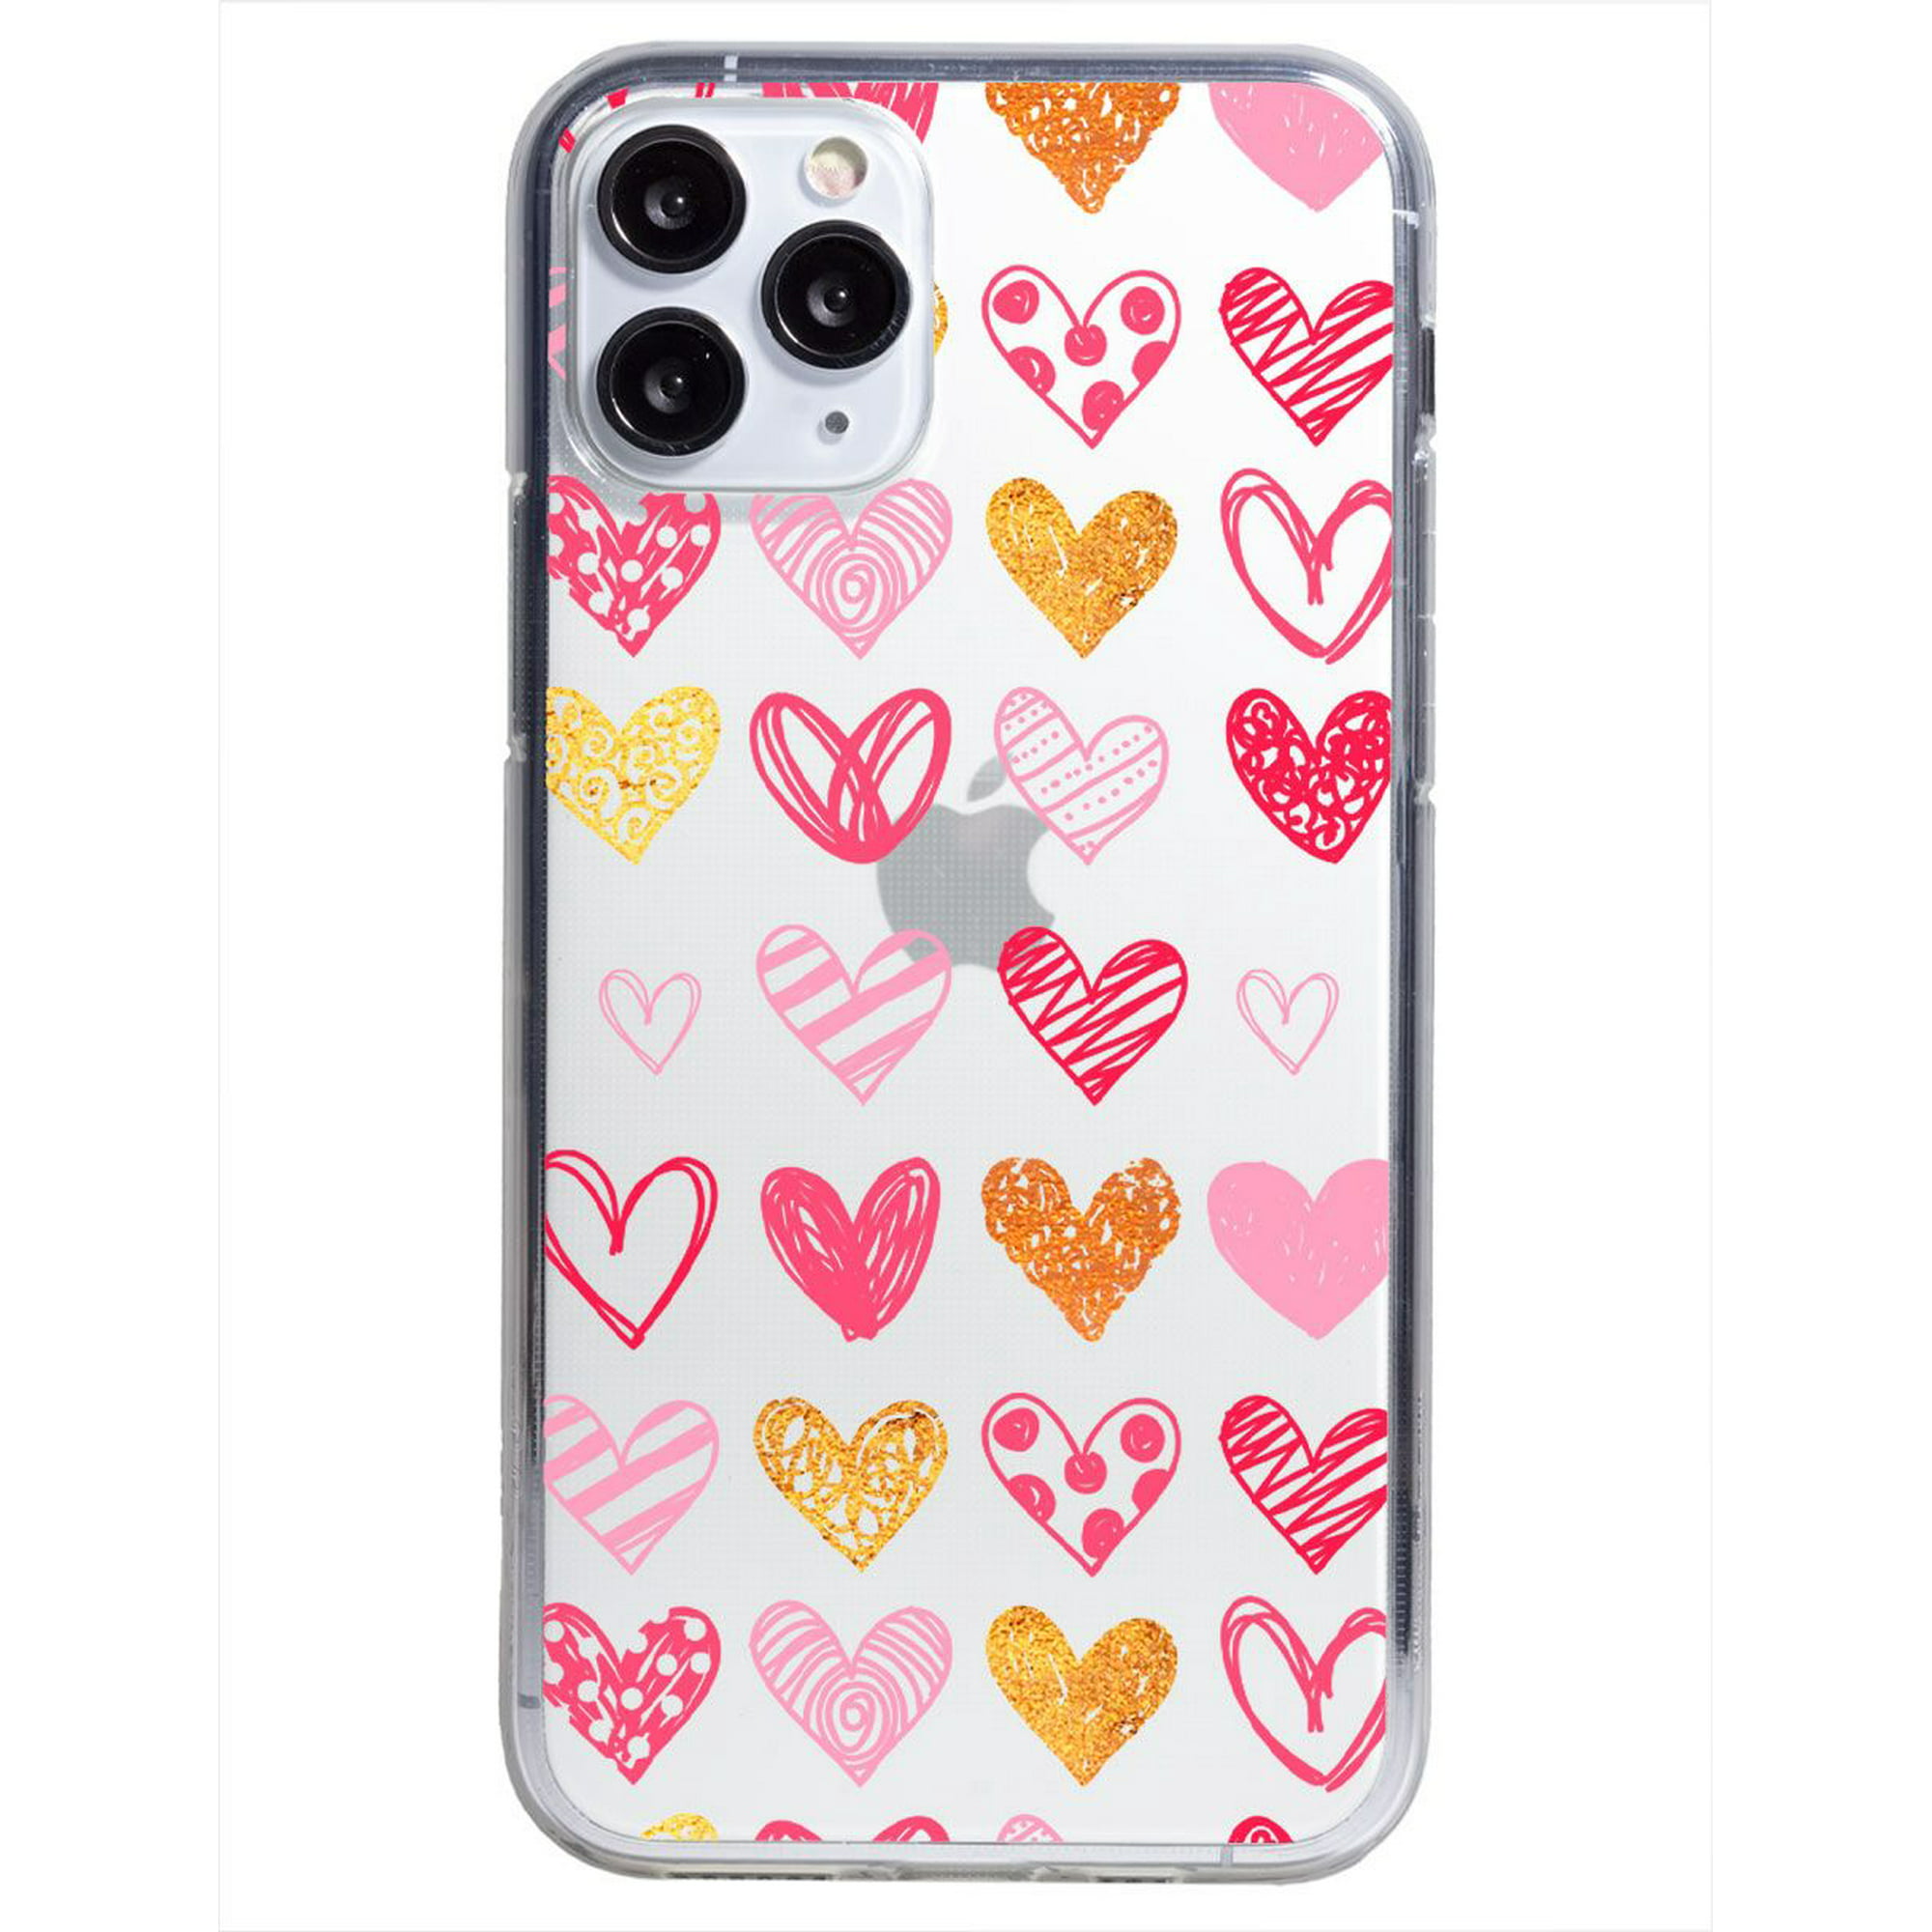 Funda para iphone 11 pro max corazones handmade, uso rudo, instacase protector para iphone 11 pro max antigolpes, case corazones handmade